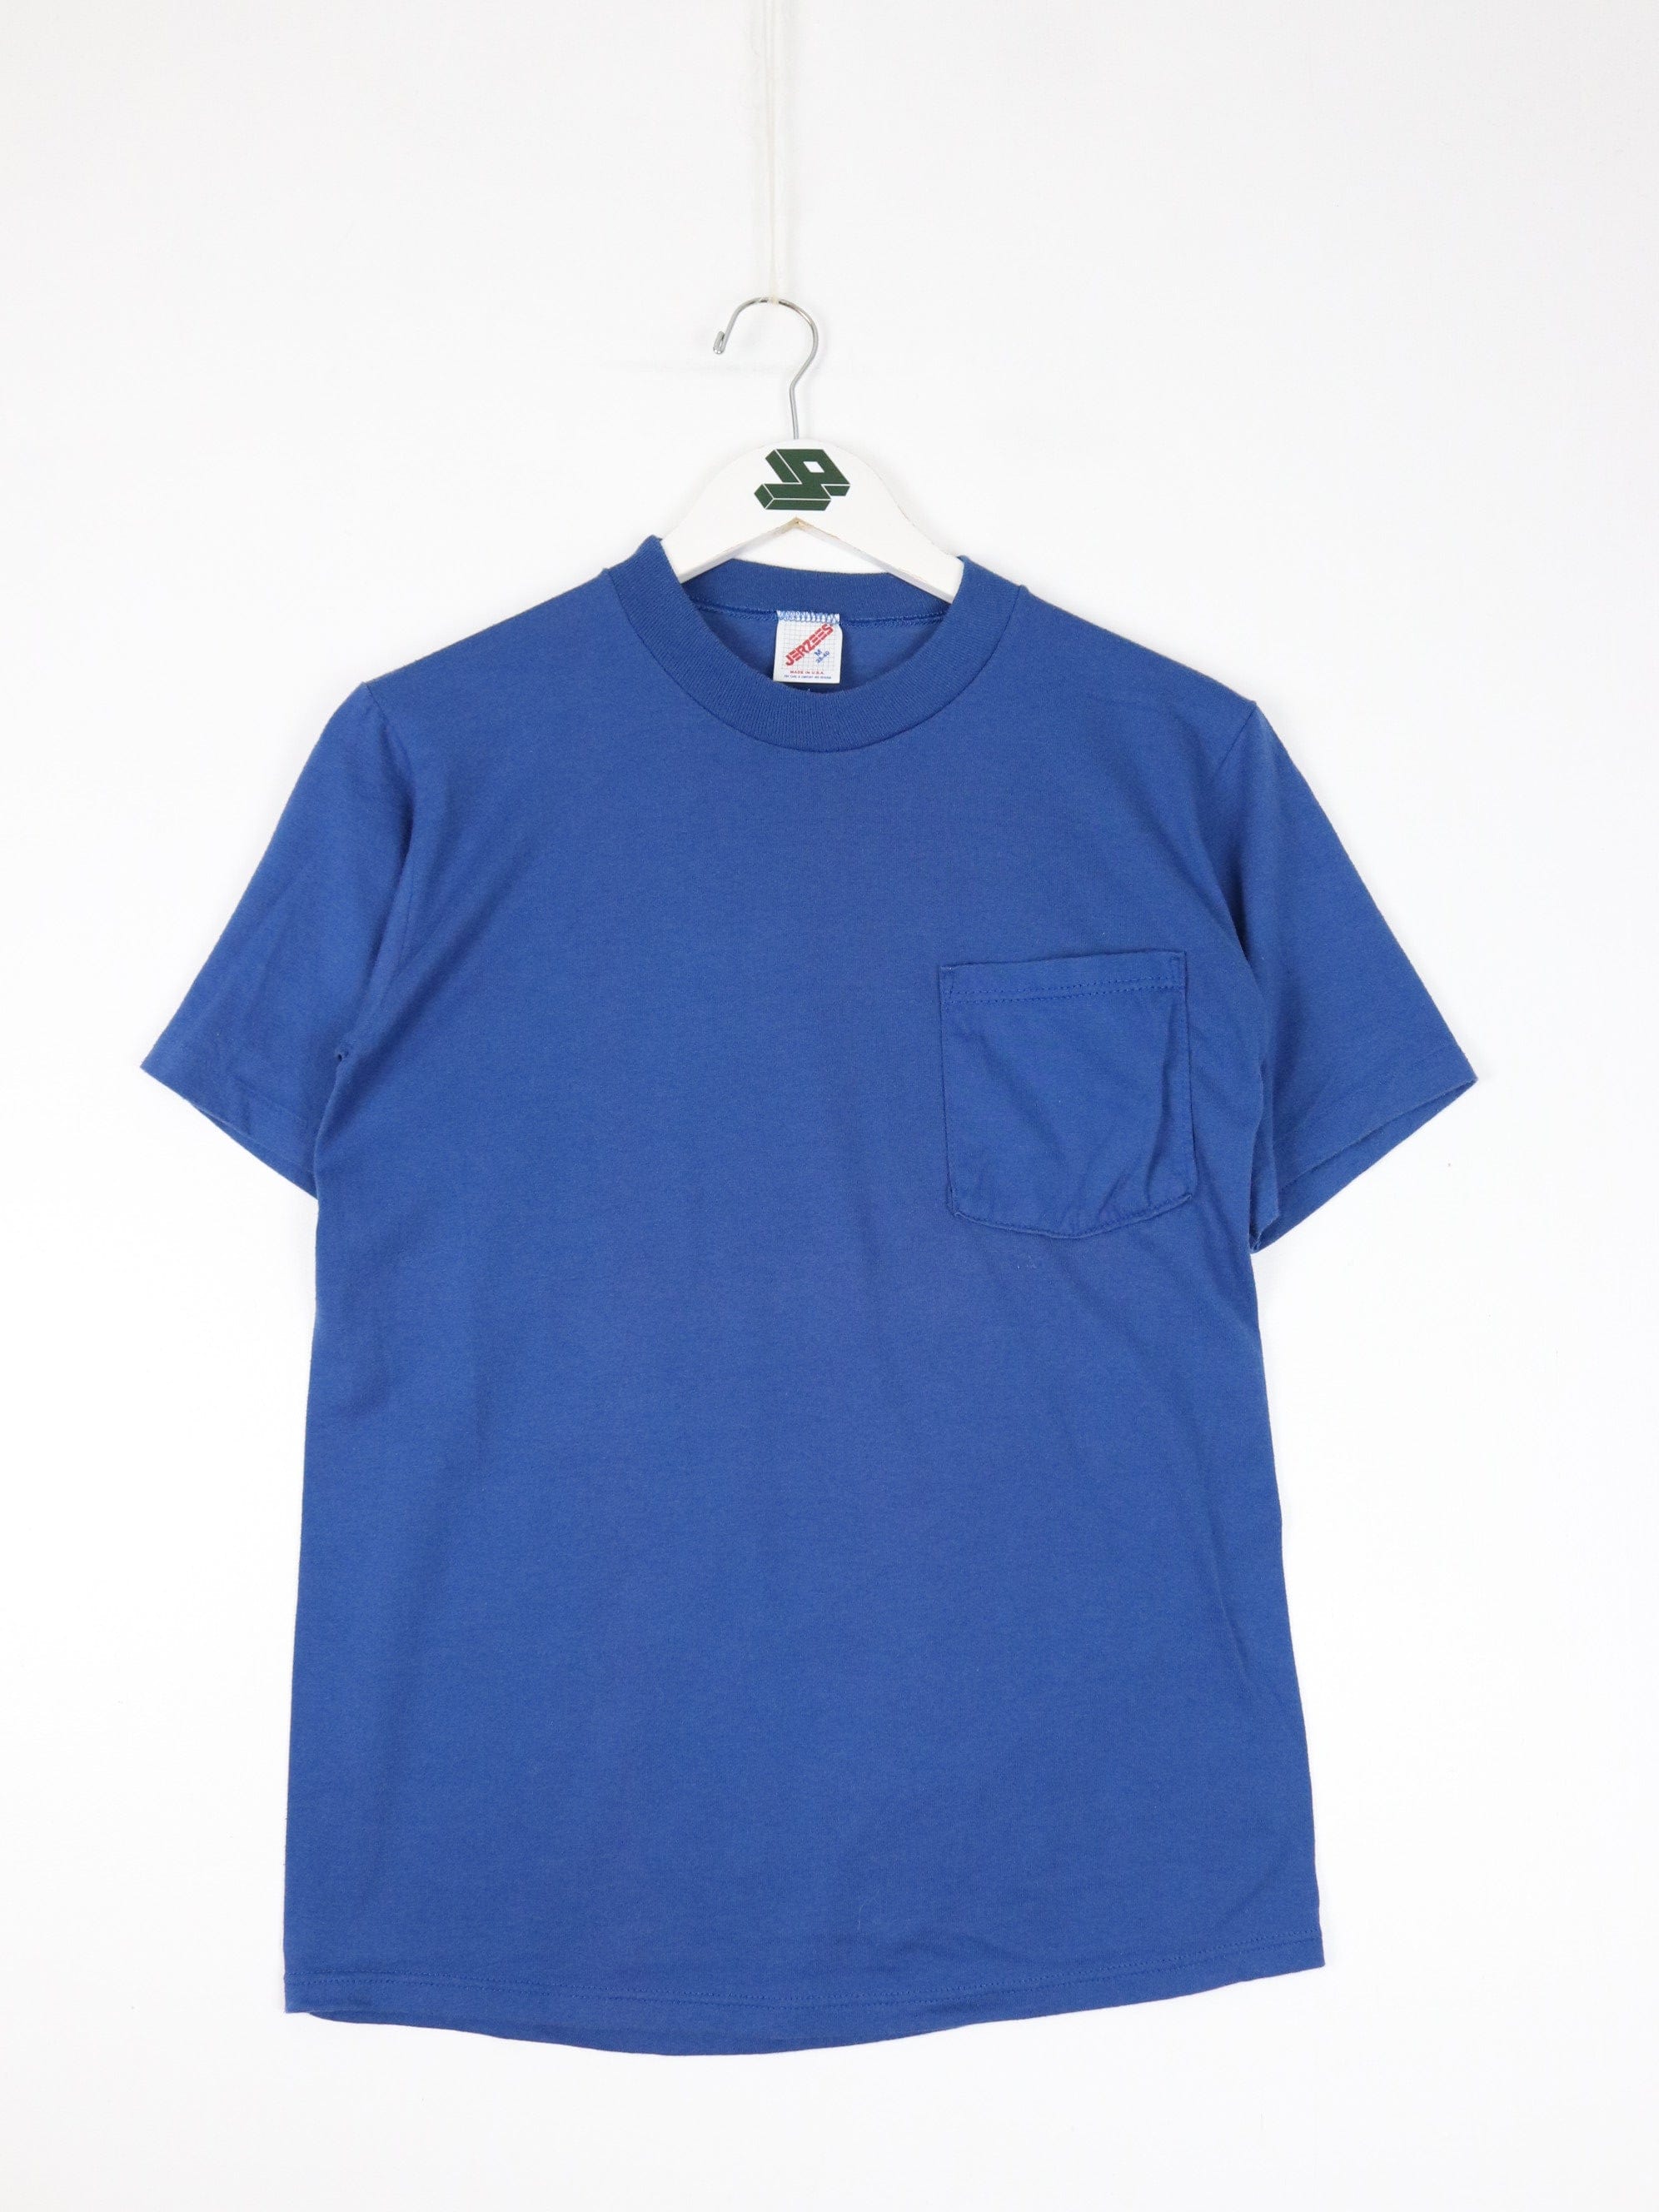 Vintage Jerzees T Shirt Fits Mens Small Blue Pocket 90s Blank – Proper  Vintage